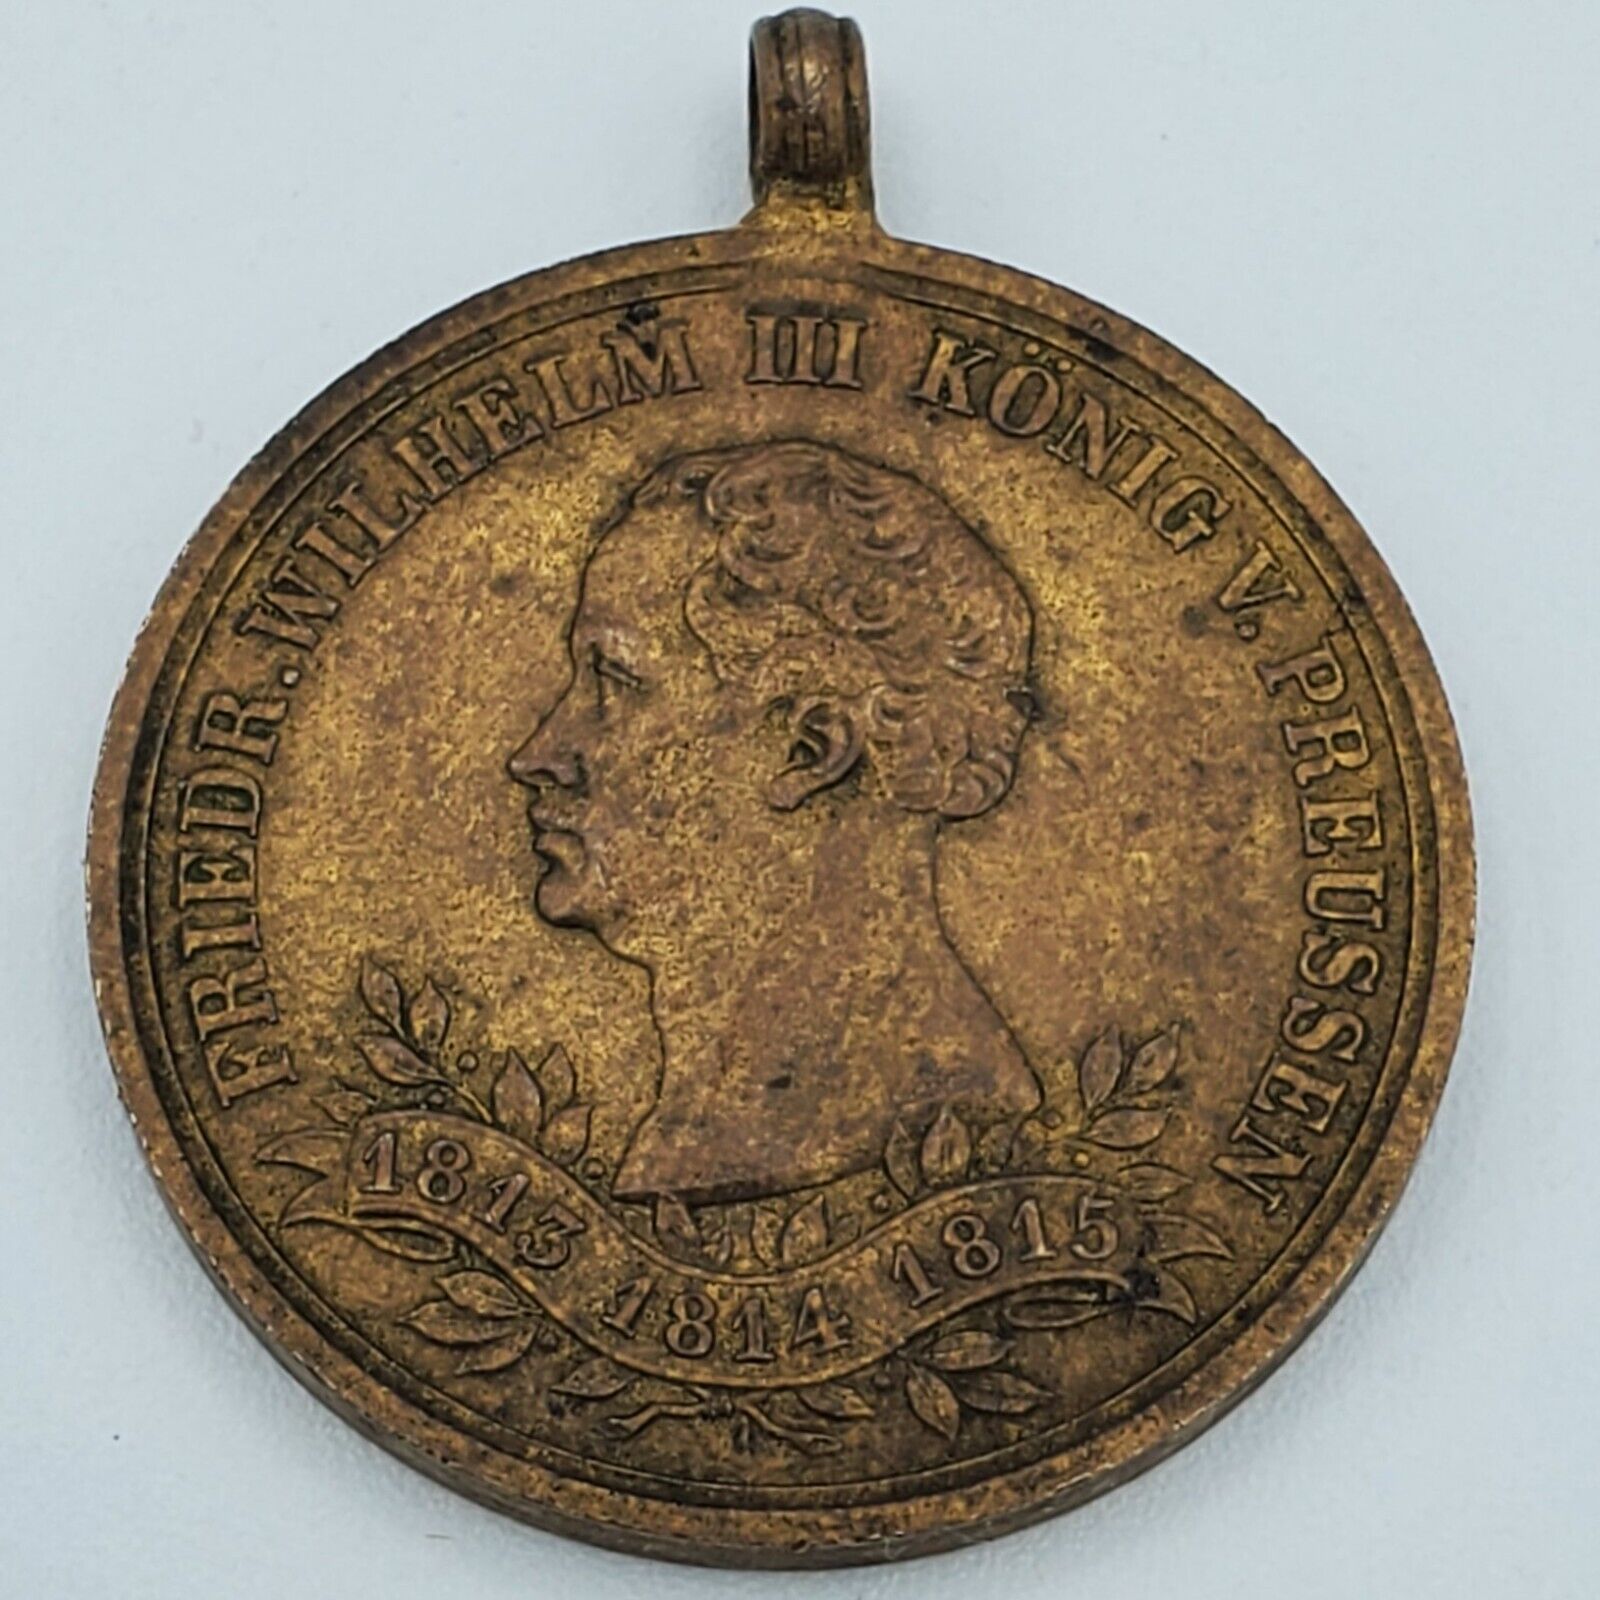 German Napoleonic War Veteran medal 1813 1815 1863 Prussia award badge original